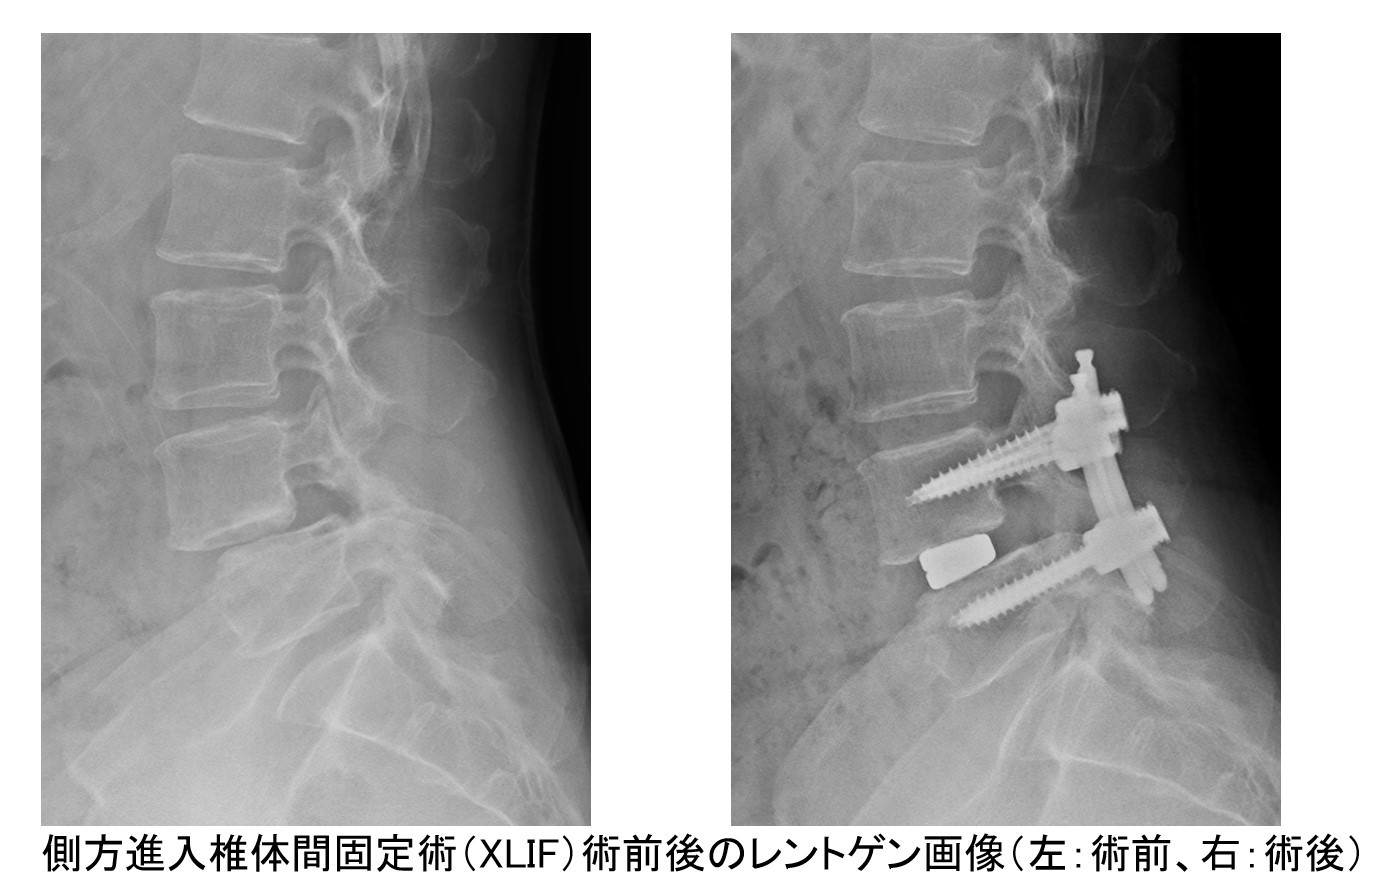 腰部脊柱管狭窄症・腰椎変性すべり症について